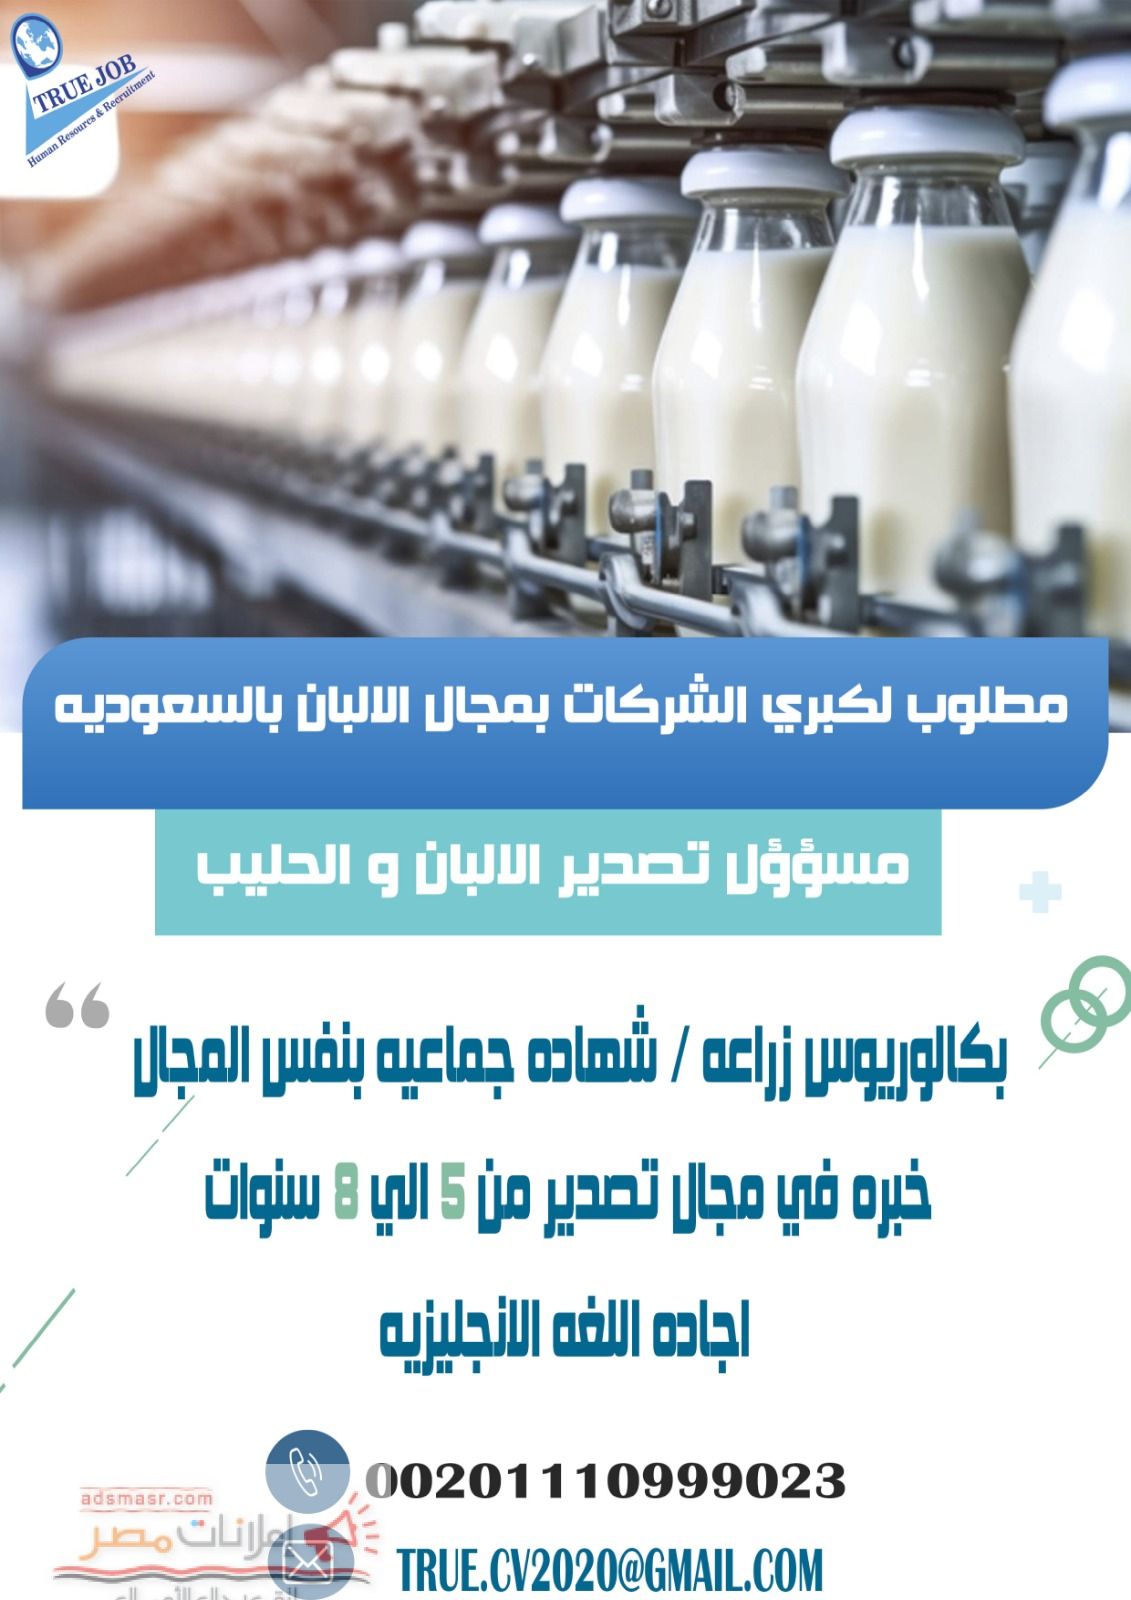 مطلوب مسؤؤل تصدير لمنتجات الحليب والالبان